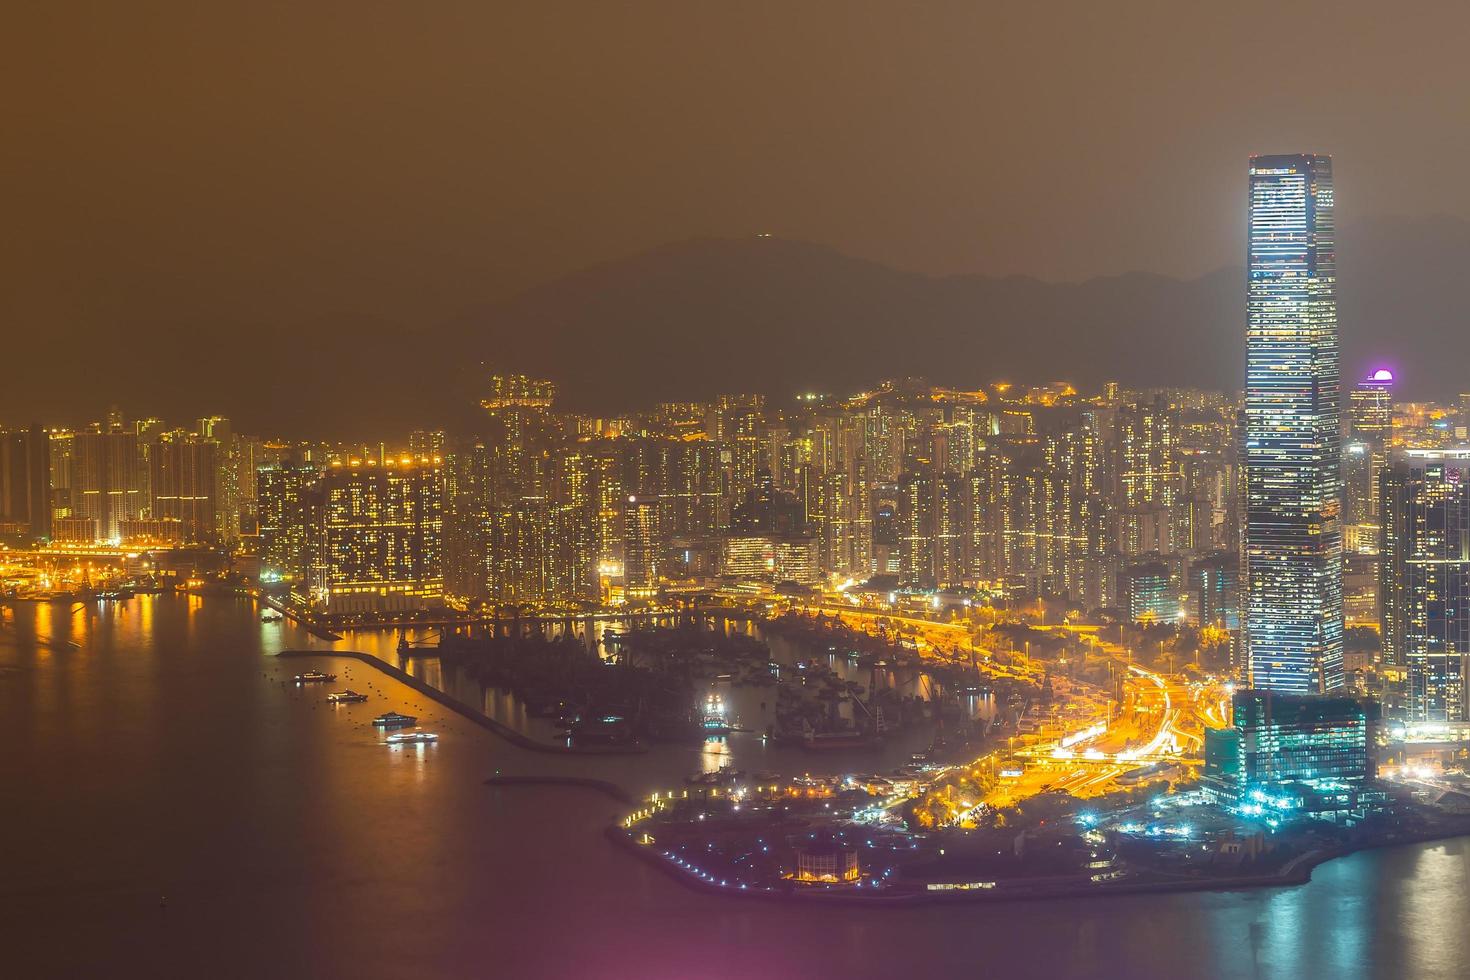 Cityscape of Hong Kong city, China photo